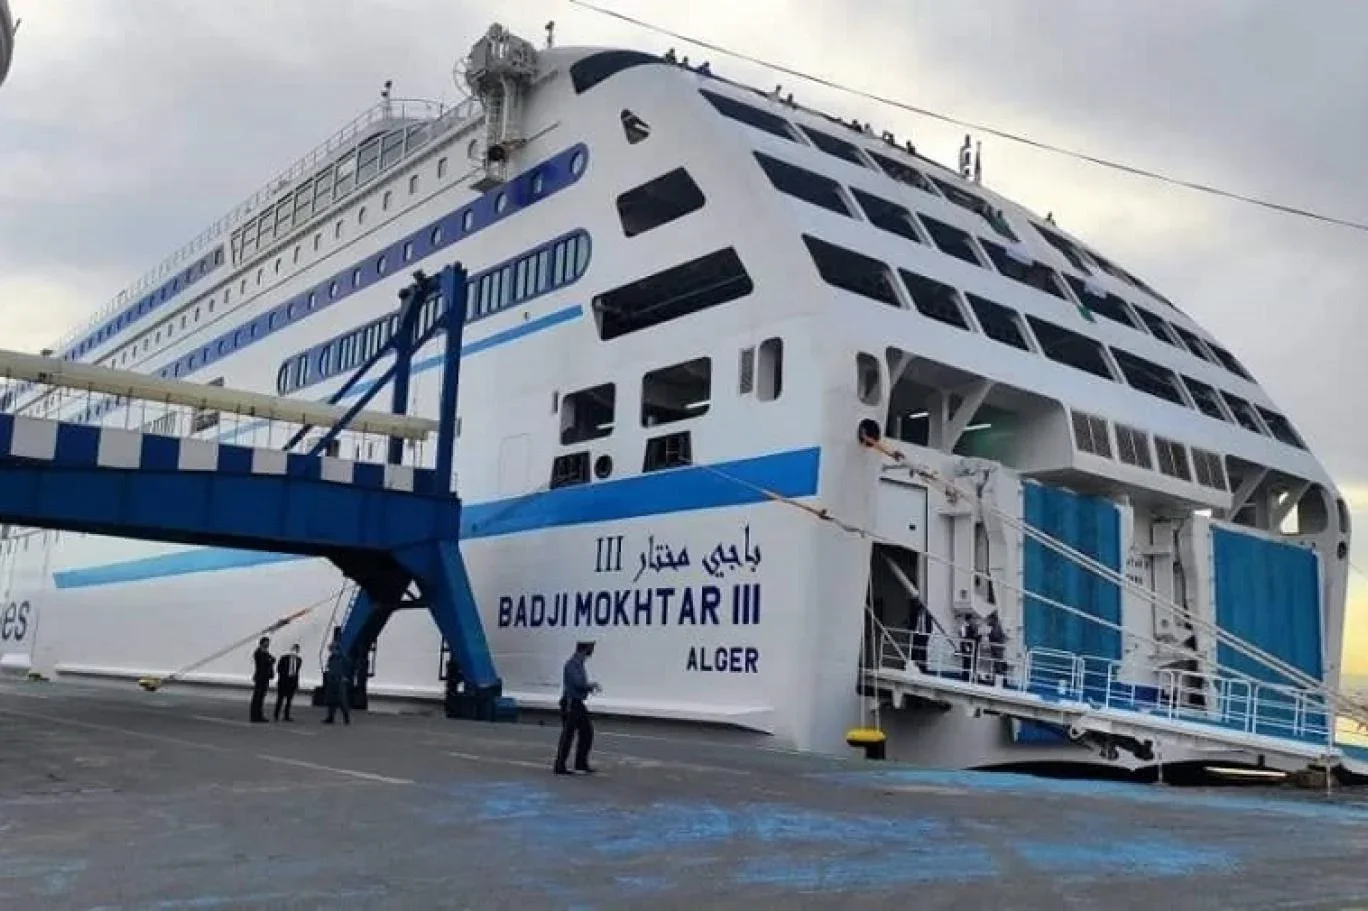 المؤسسة الوطنية للنقل البحري توضح بخصوص الفيديوهات التي نشرت مؤخرا حول رحلة مرسيليا الجزائر